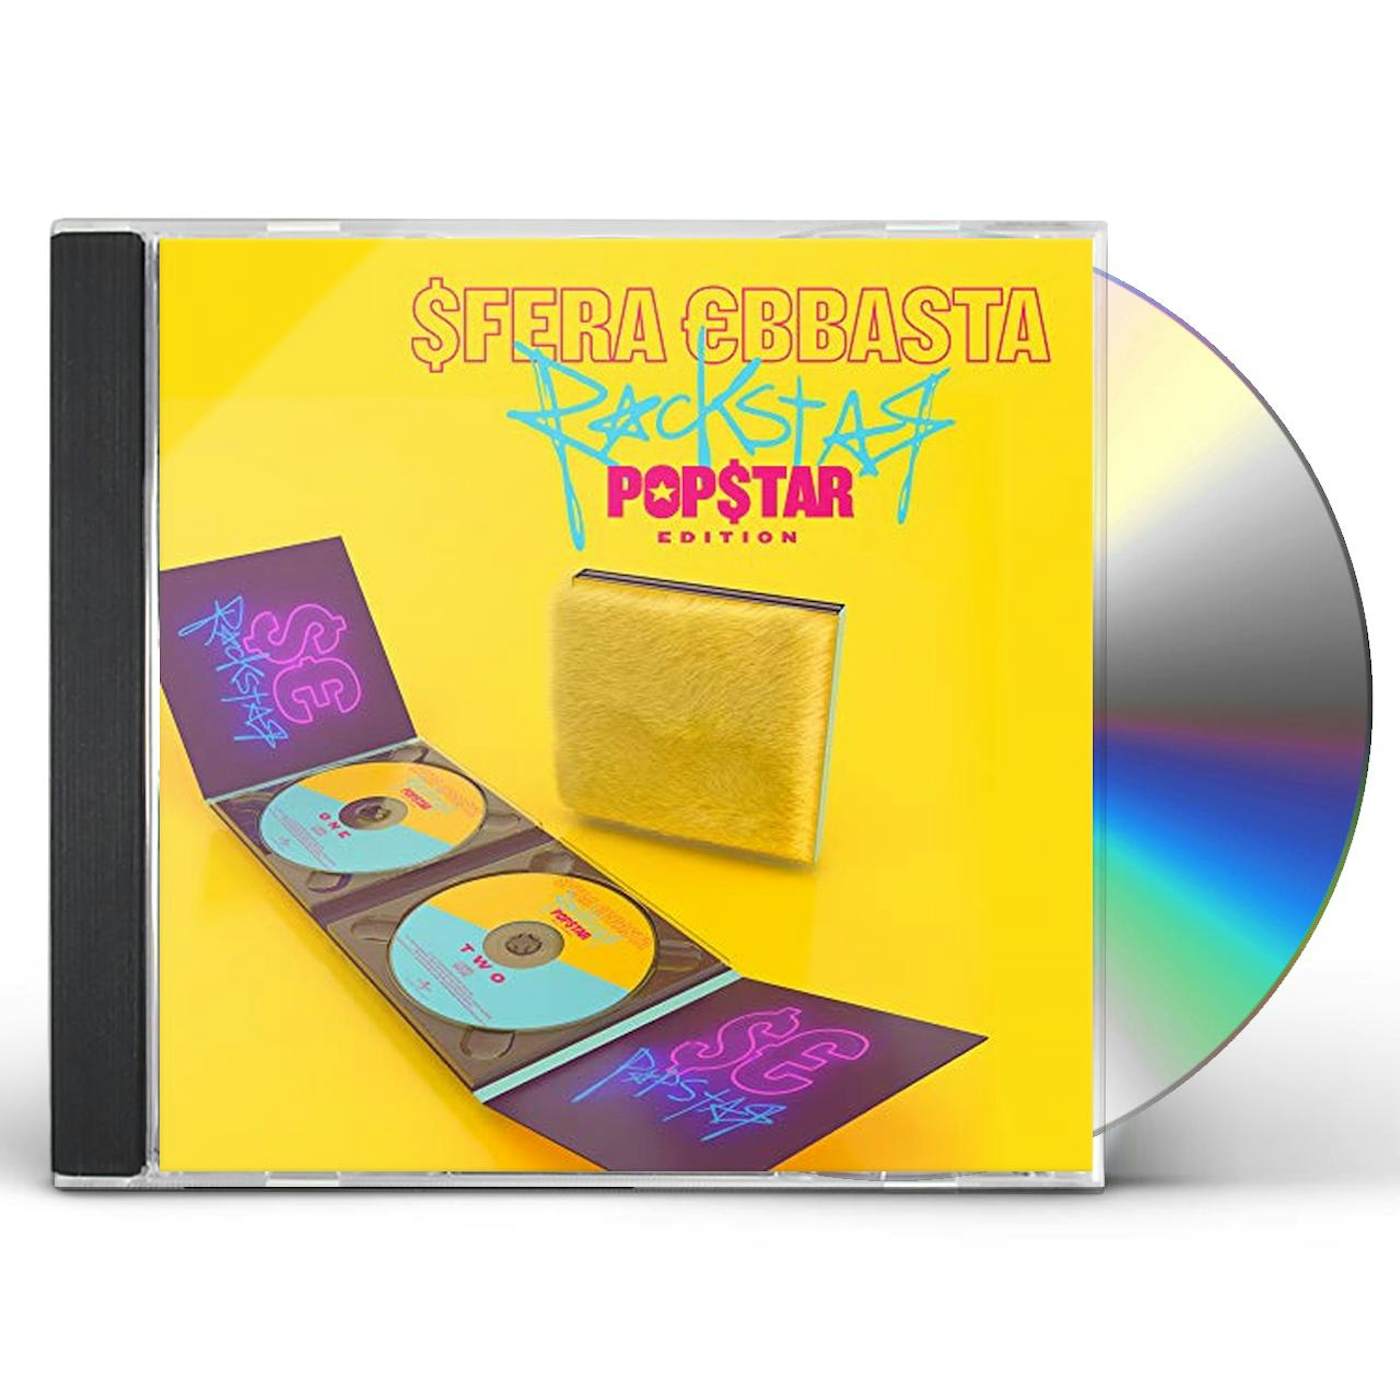 Sfera Ebbasta ROCKSTAR POPSTAR CD